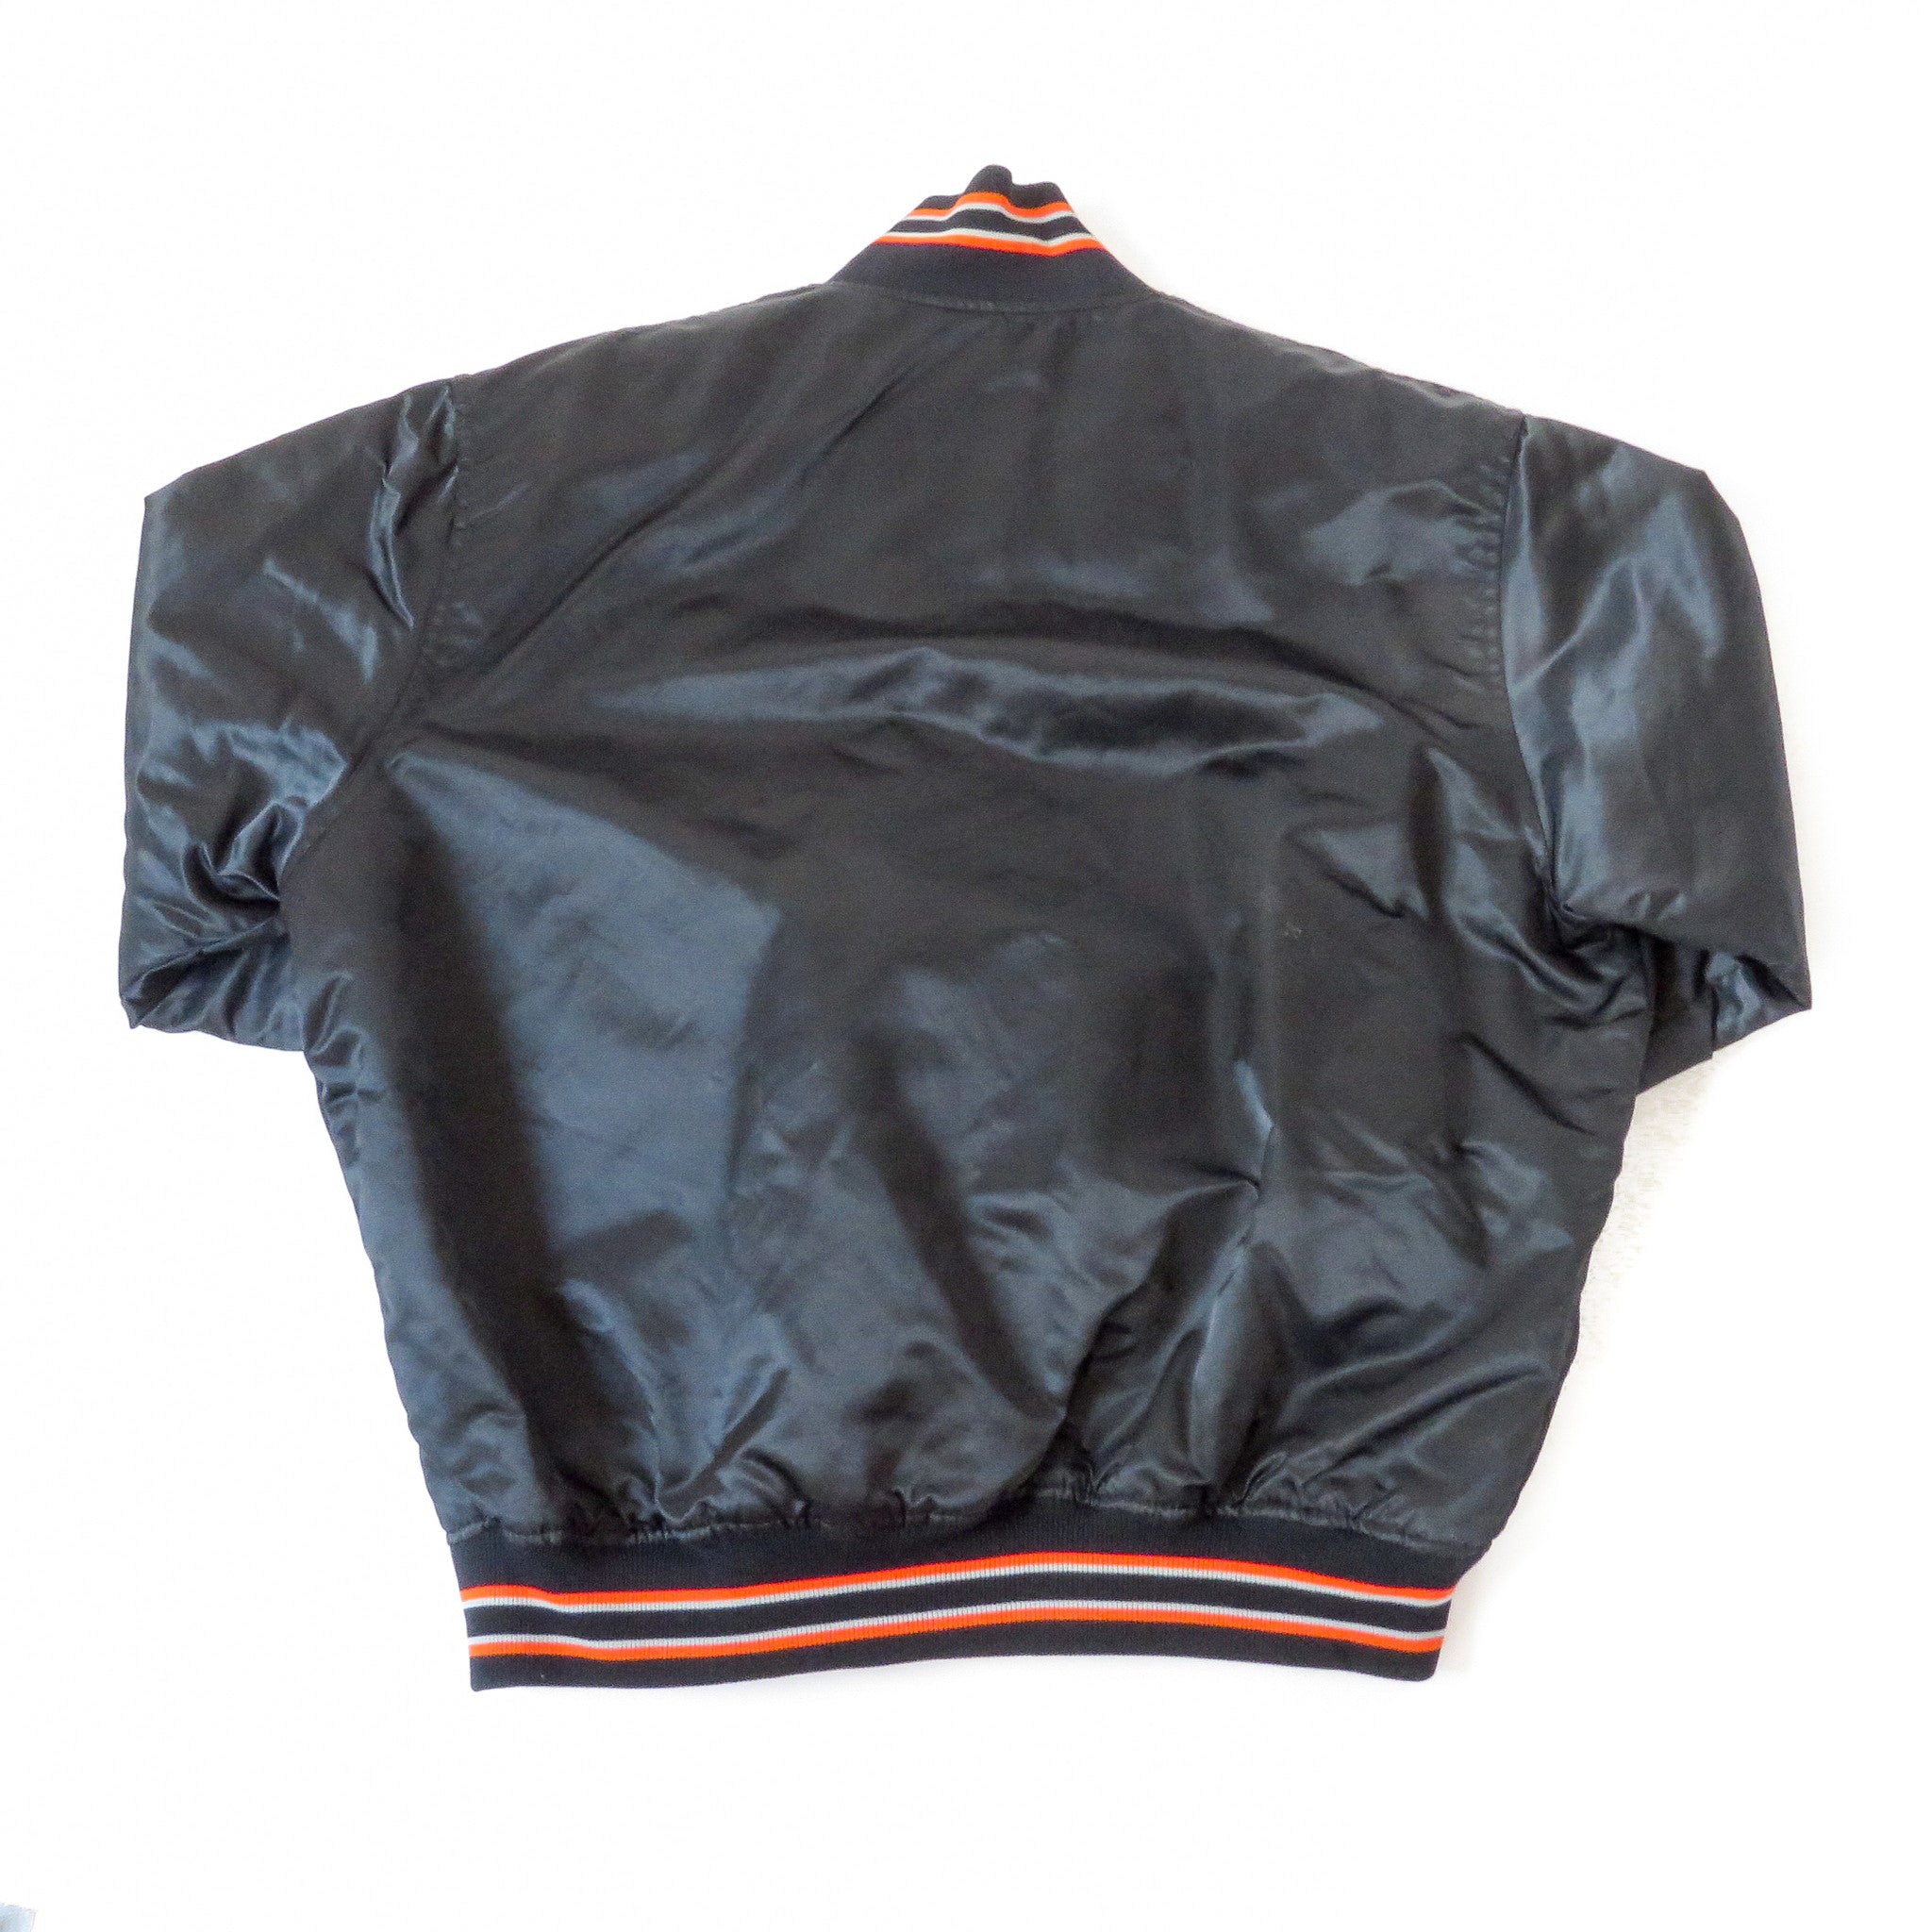 Vintage Starter San Francisco Giants Jacket Sz 2XL